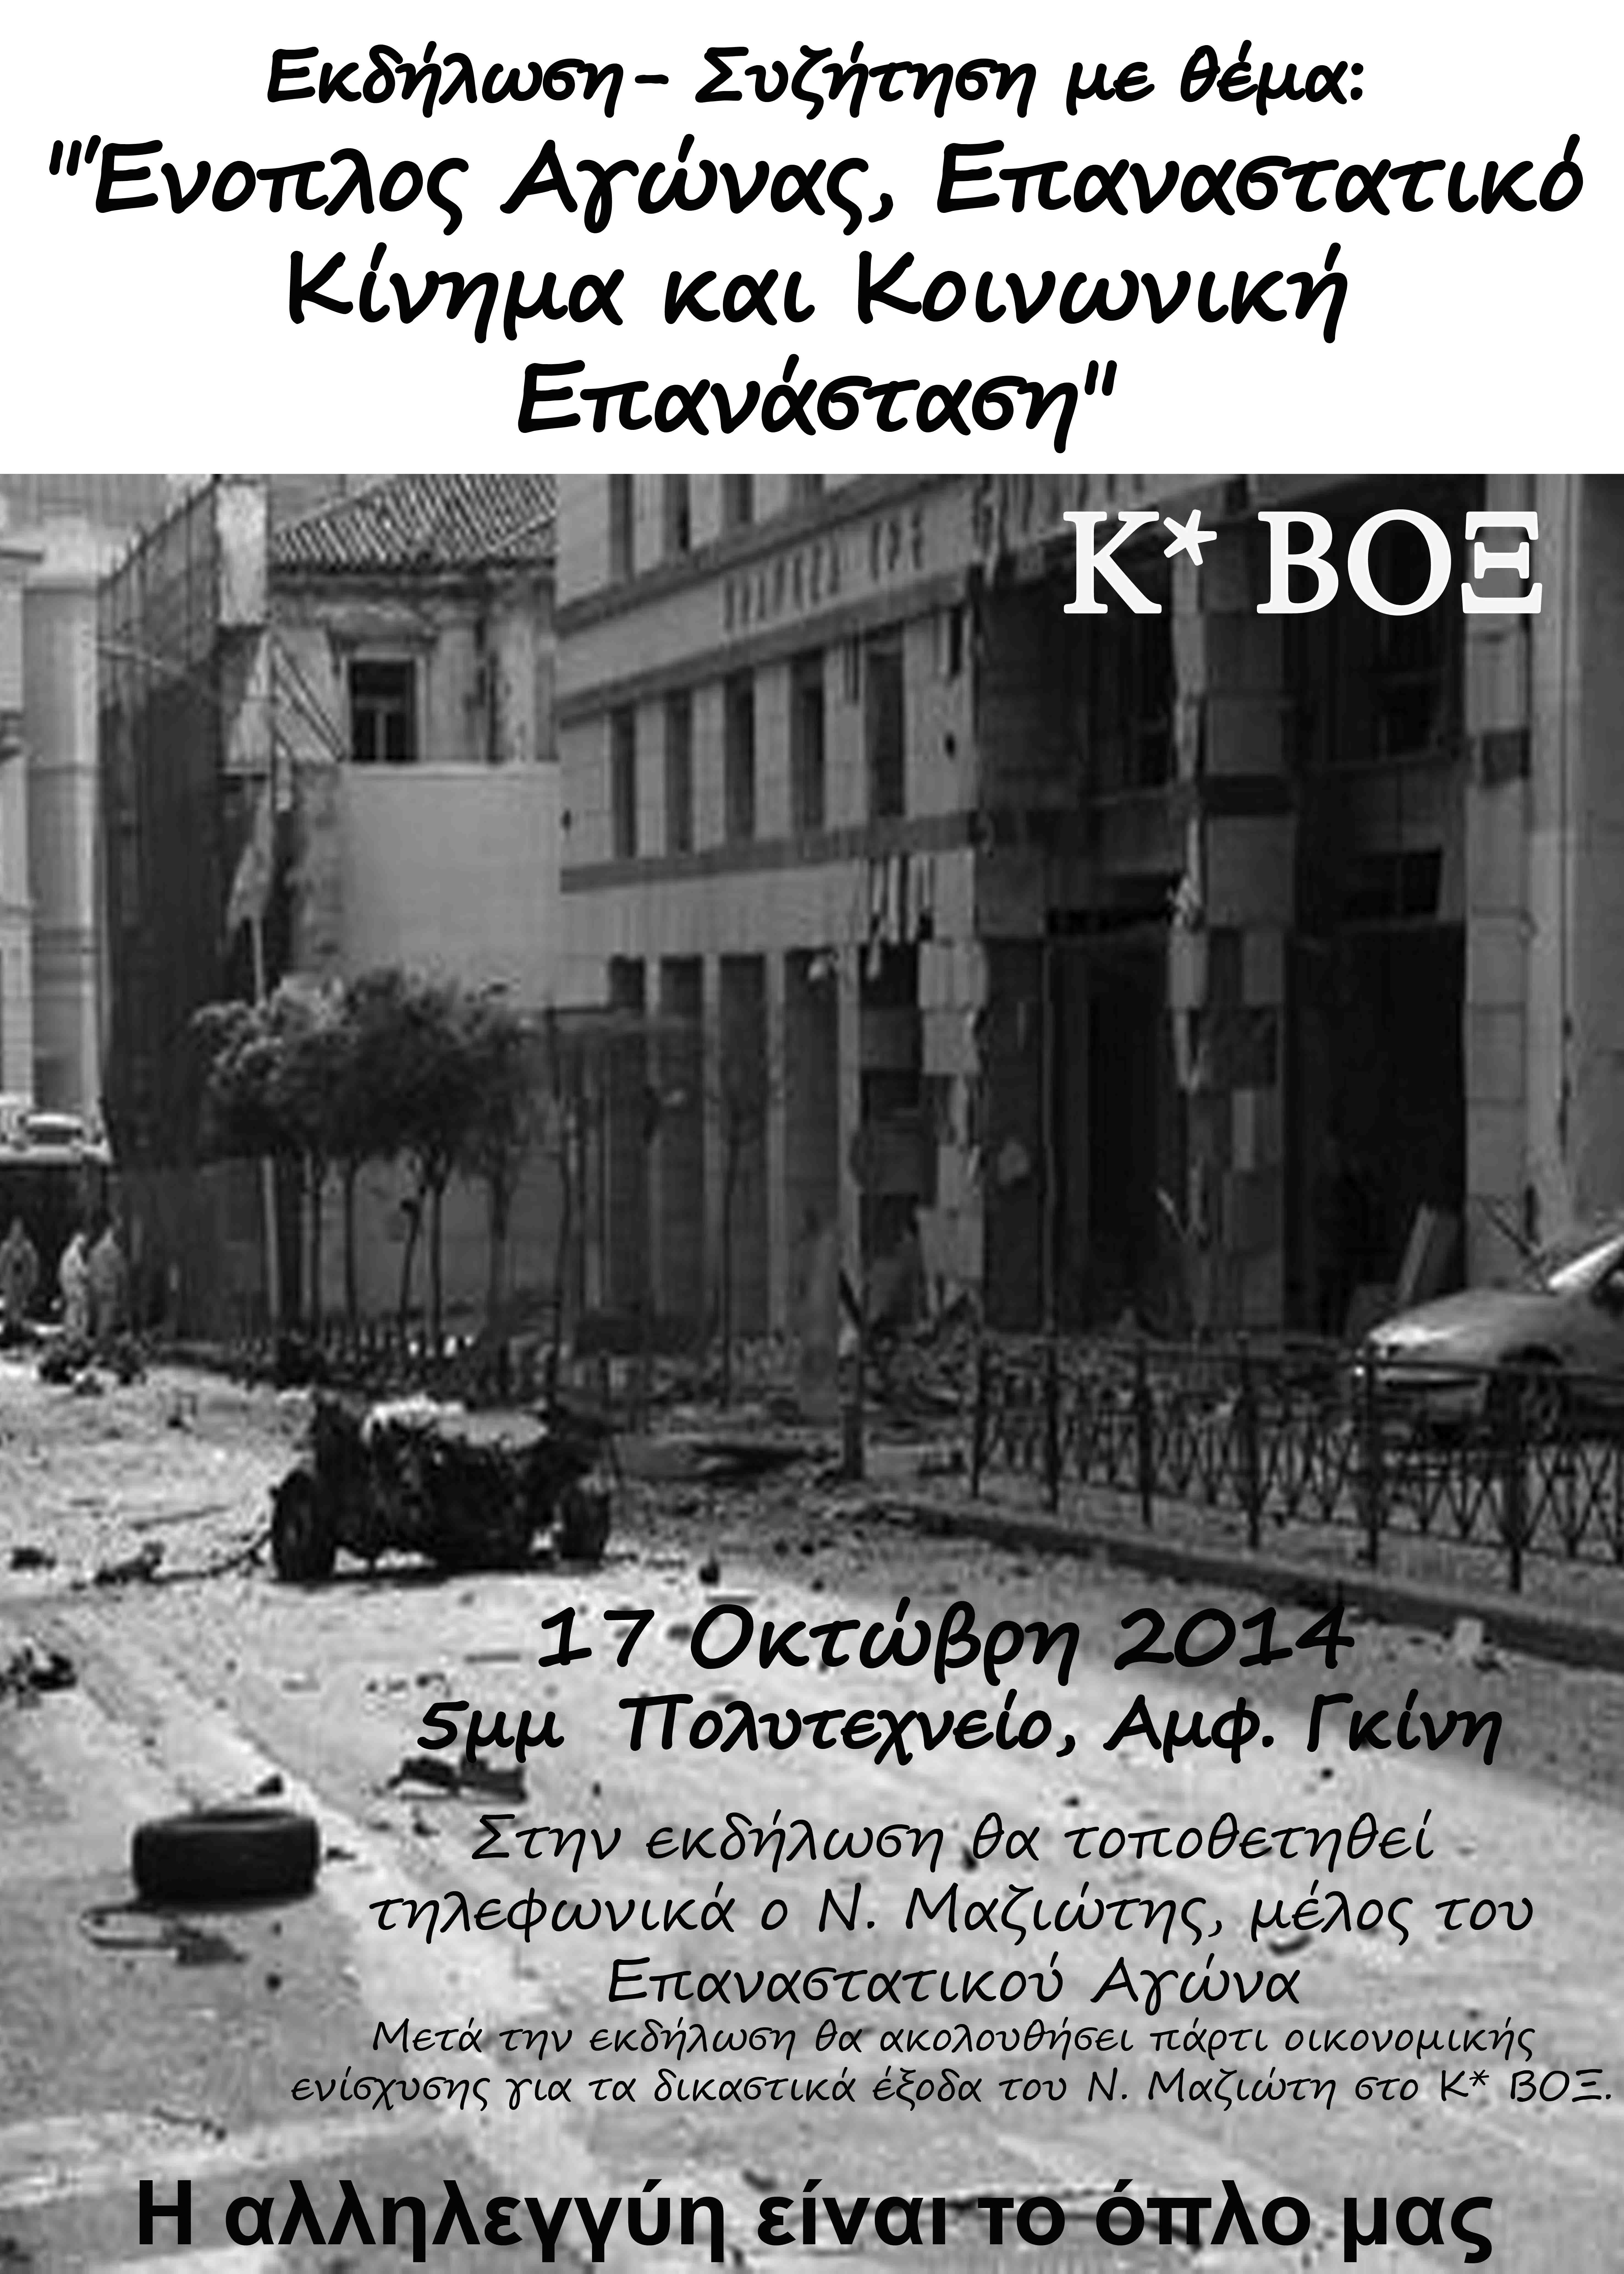 Κ*ΒΟΞ : Εισήγηση στην εκδήλωση “Ένοπλος Αγώνας, Επαναστατικό Κίνημα και Κοινωνική Επανάσταση” (17/10/14)